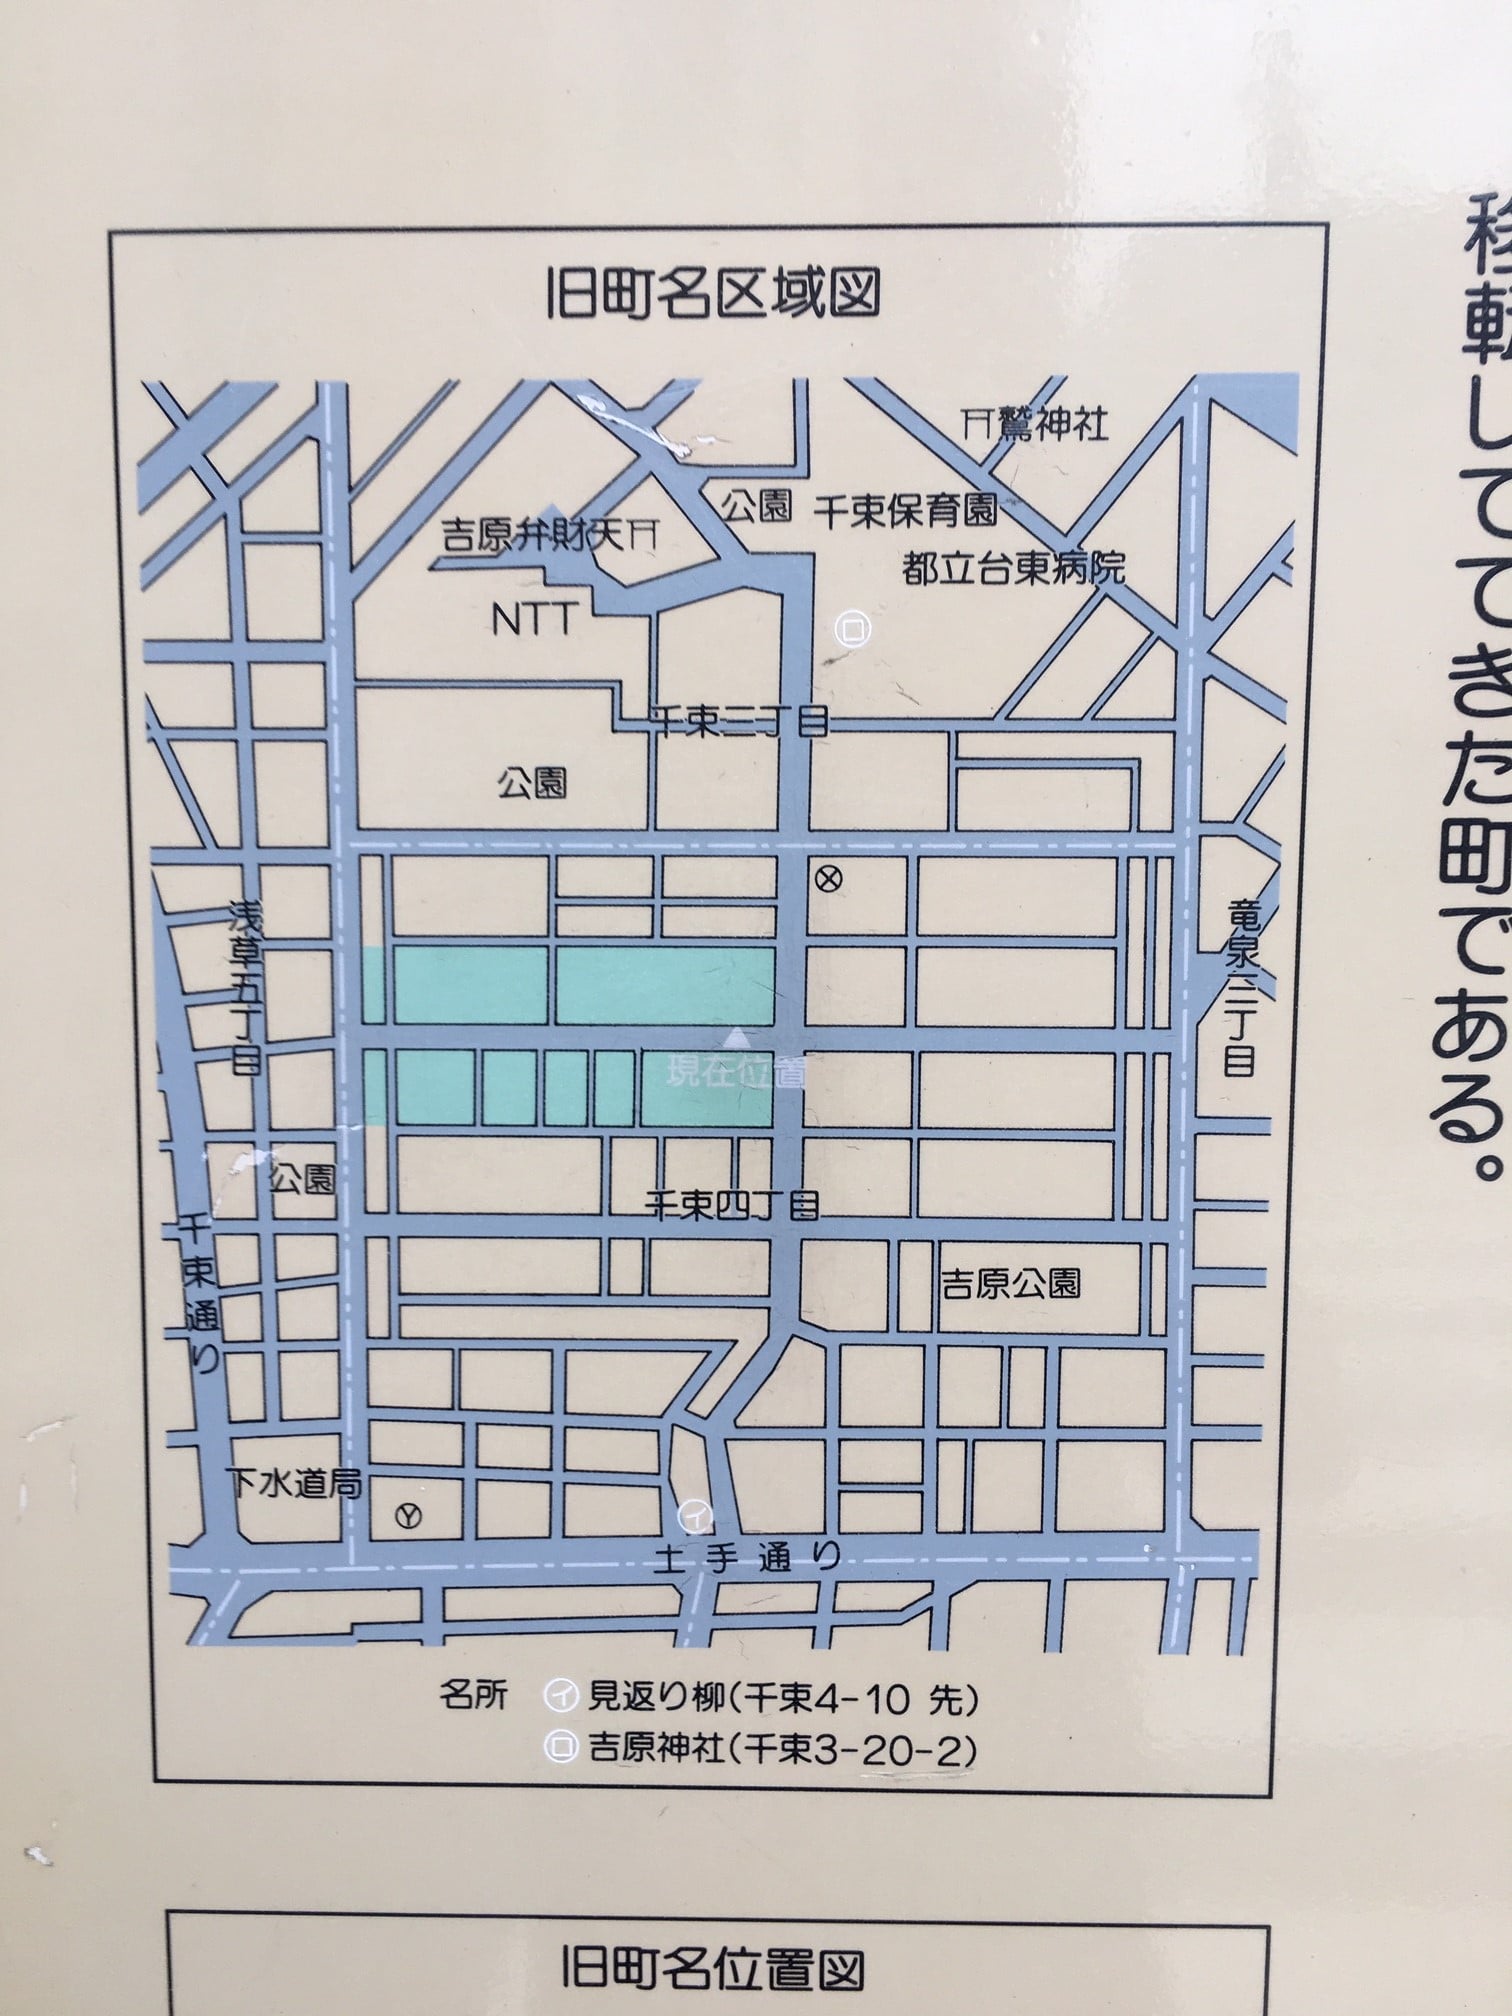 現在の地図にあてはめた浅草新吉原角町の区域図